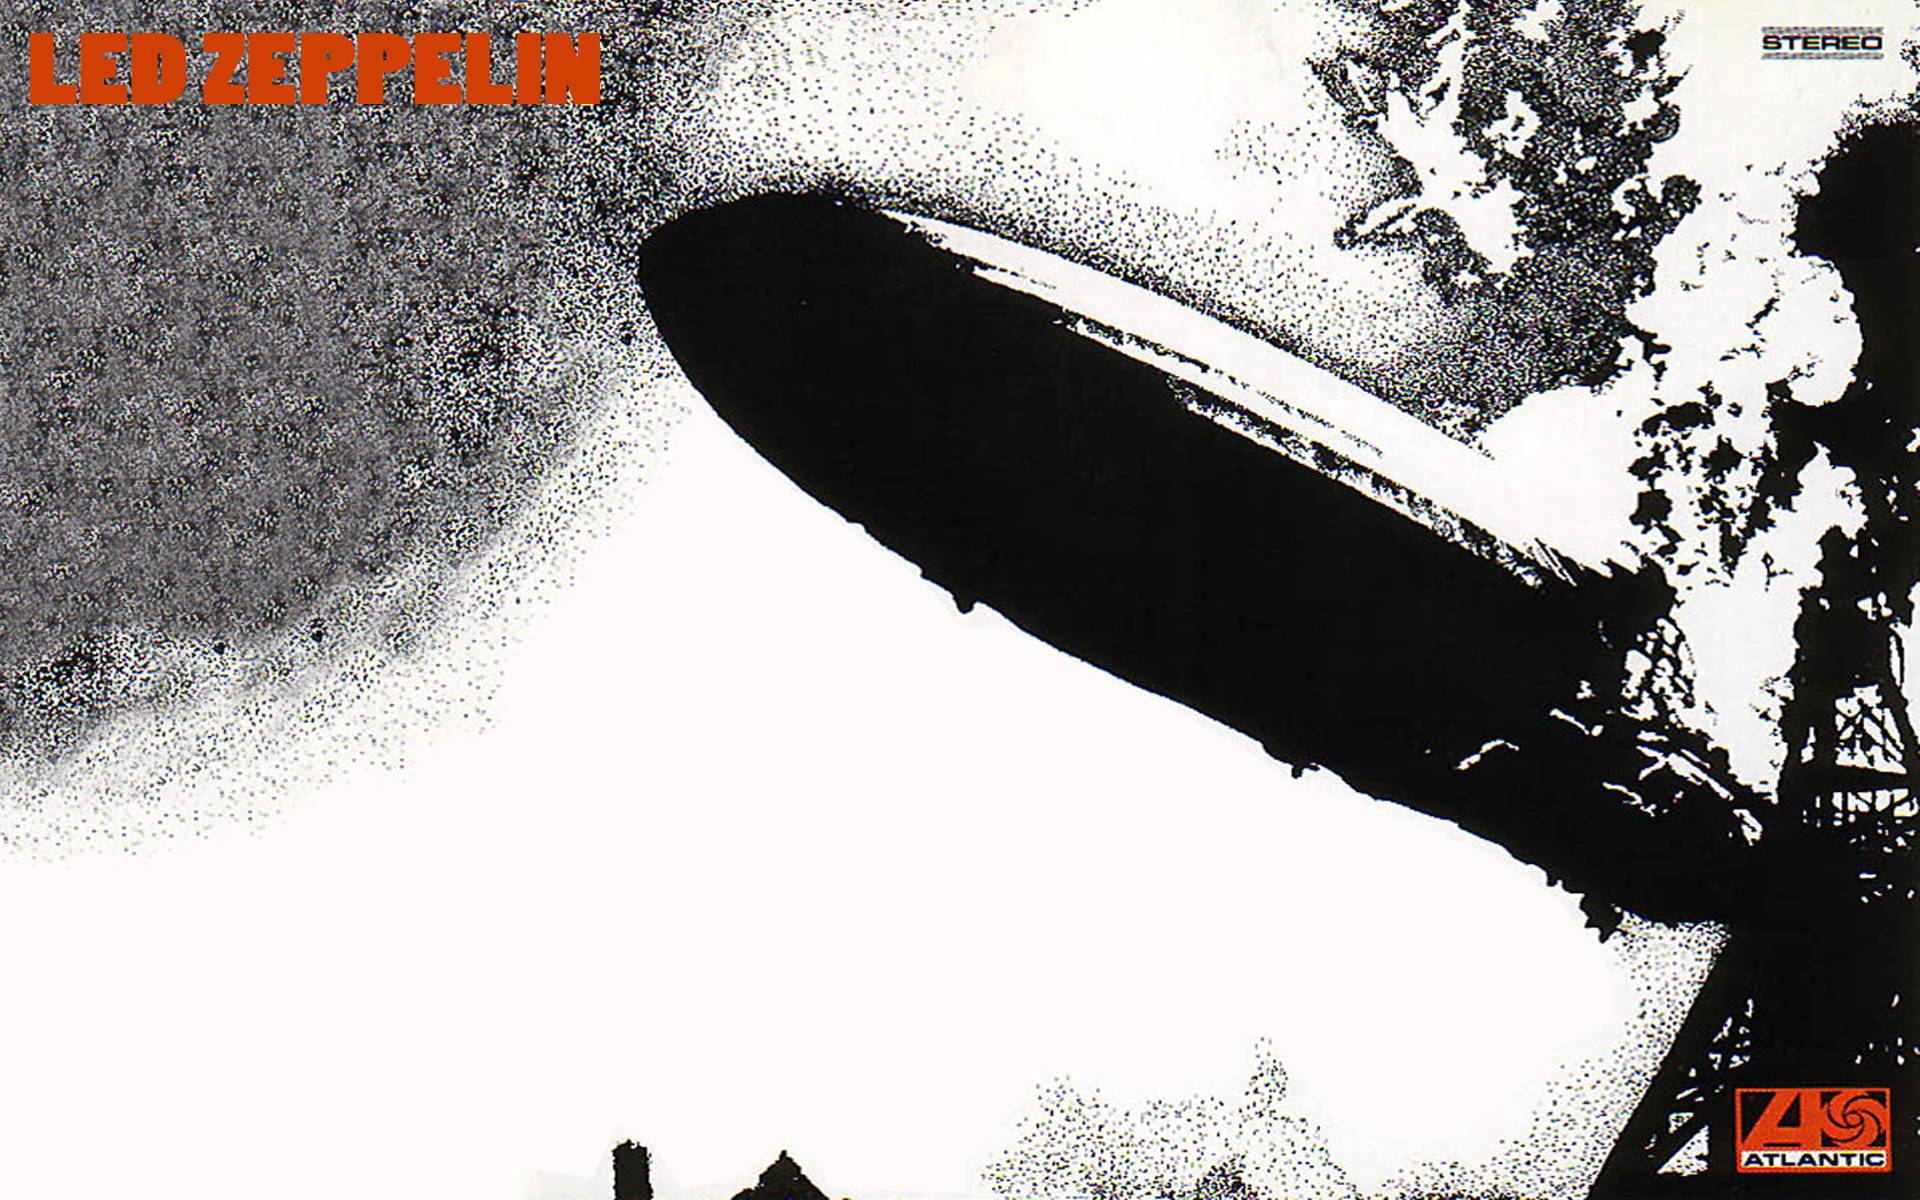 led zeppelin wallpaper,airship,zeppelin,aerostat,vehicle,blimp